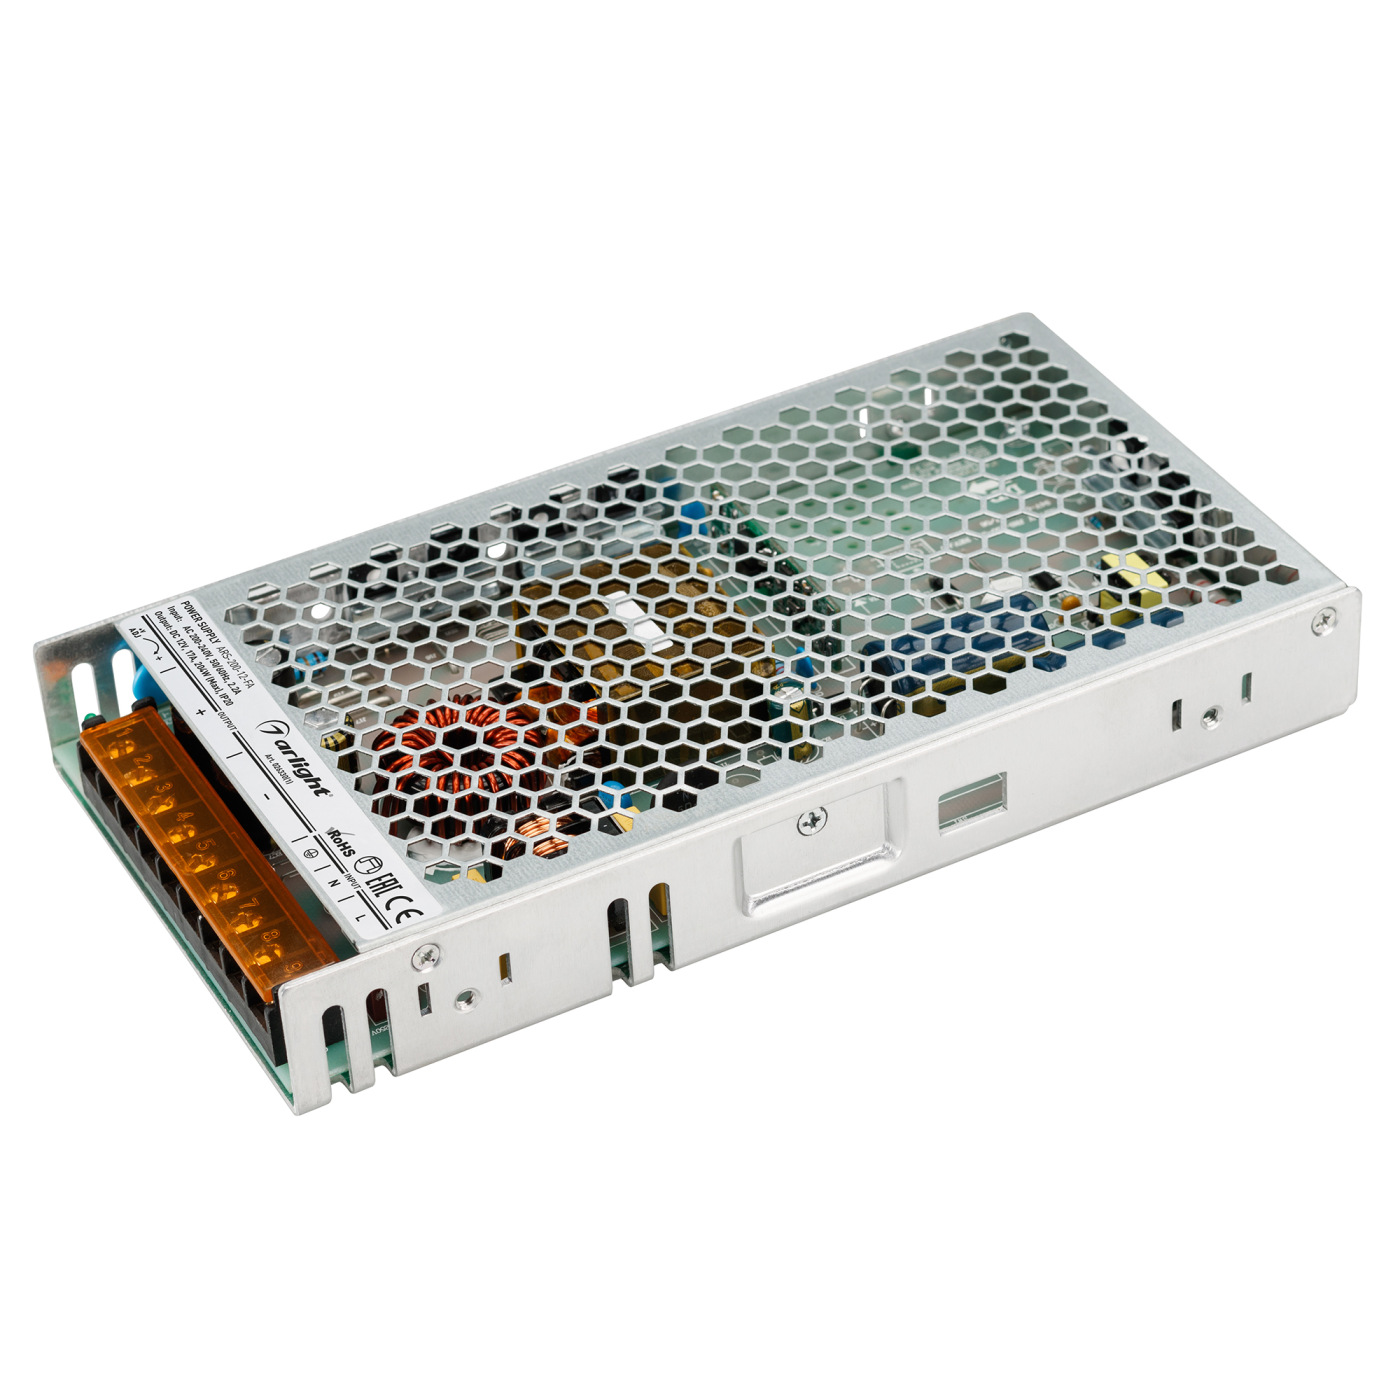 Блок питания ARS-200-12-FA (12V, 17A, 204W) (Arlight, IP20 Сетка, 3 года), 026330(1) сетка и режущий блок для электробритвы braun cooltec 40b